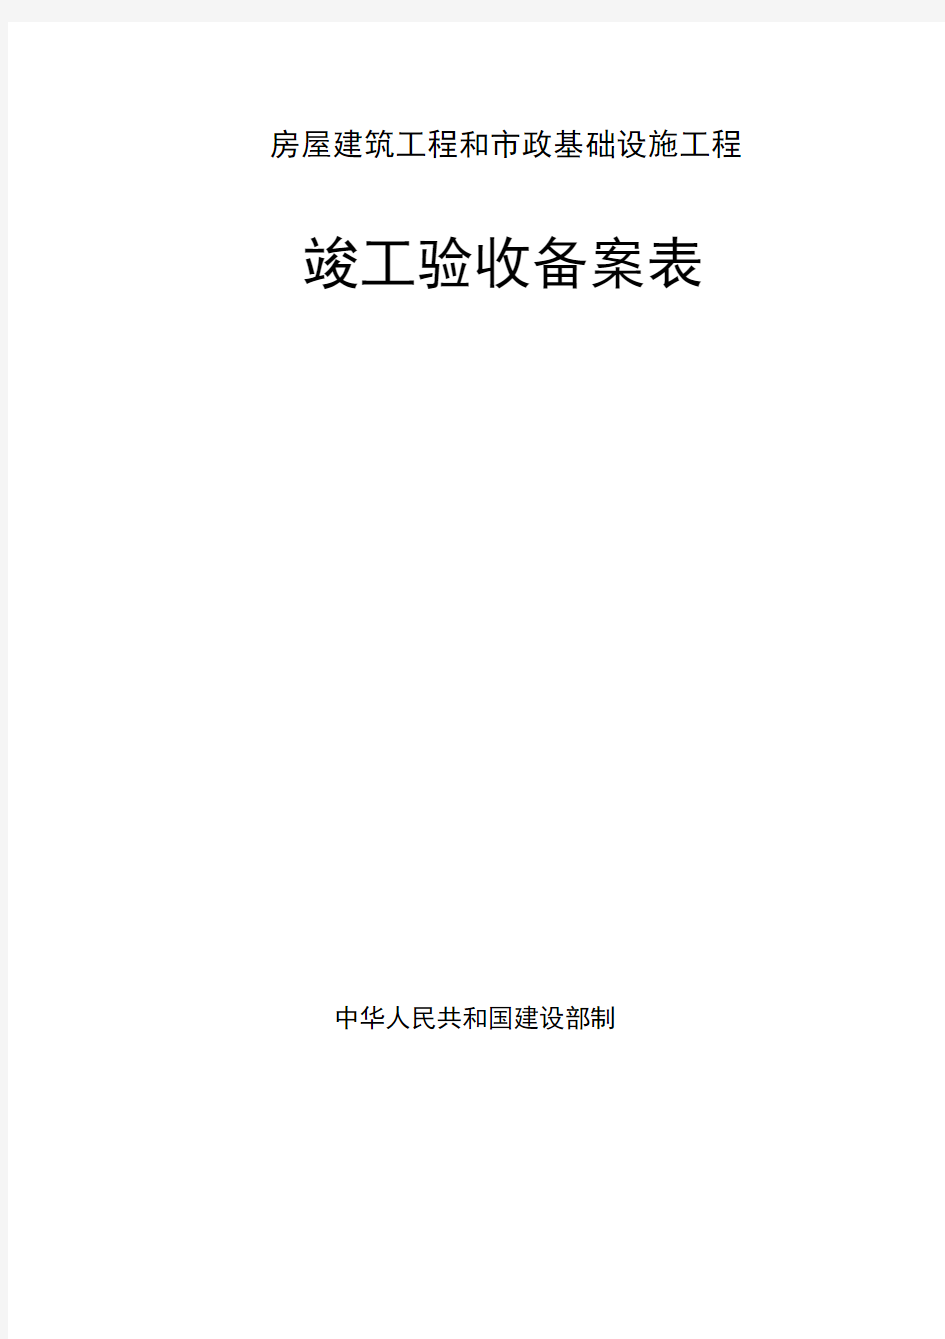 广东省统一用表《竣工验收备案表》填写范例